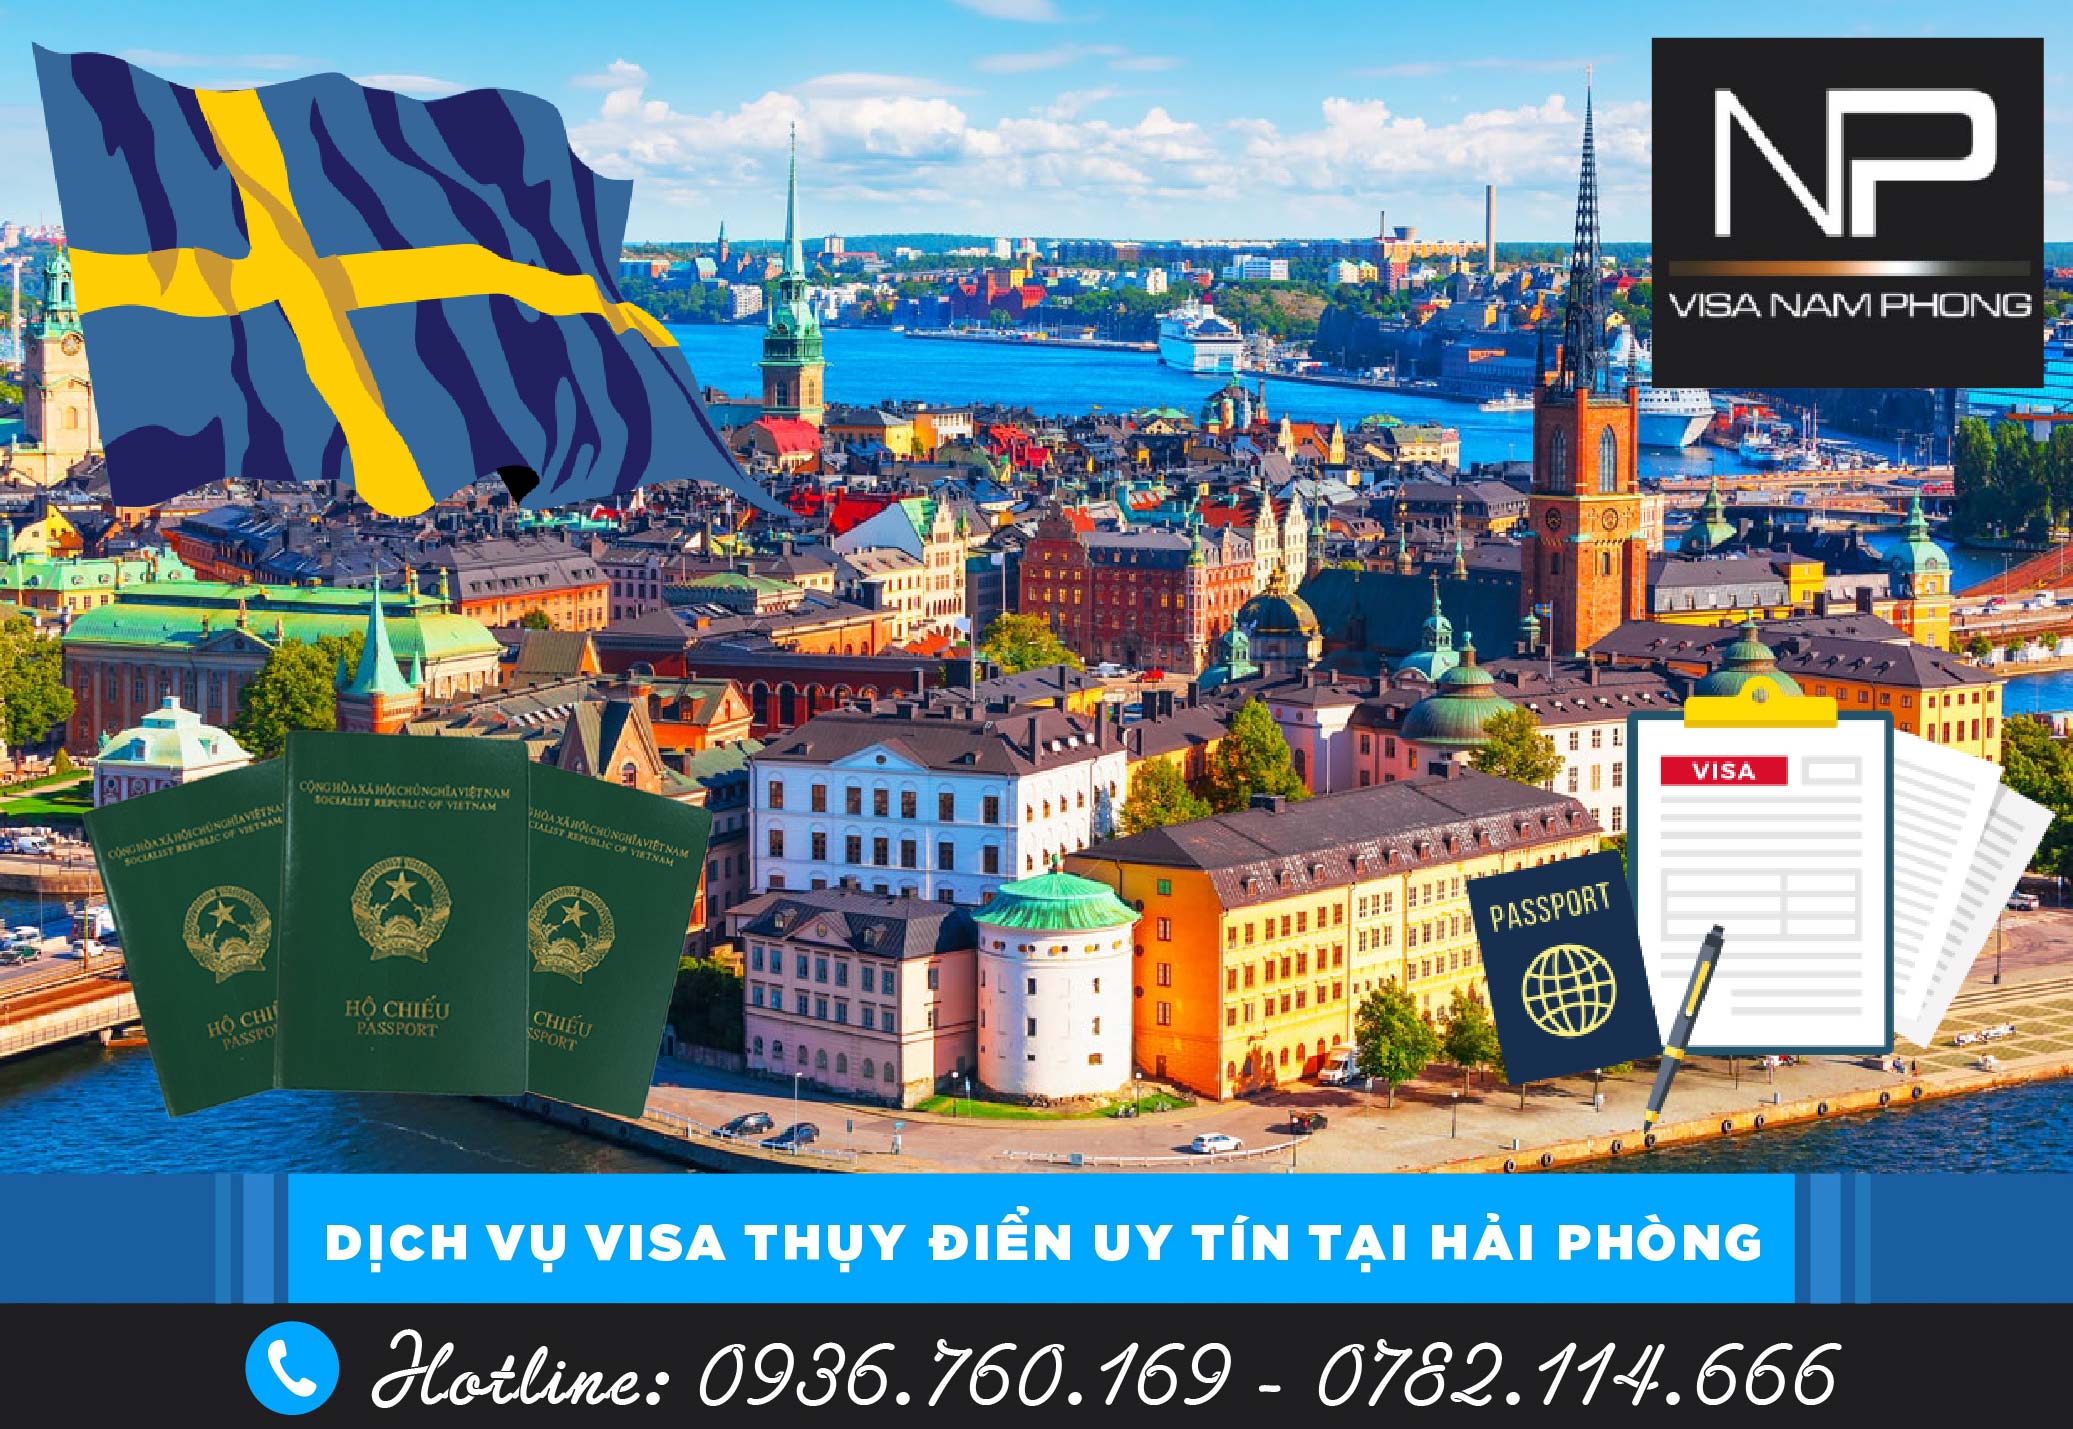 Dịch vụ visa Thụy Điển uy tín tại Hải Phòng